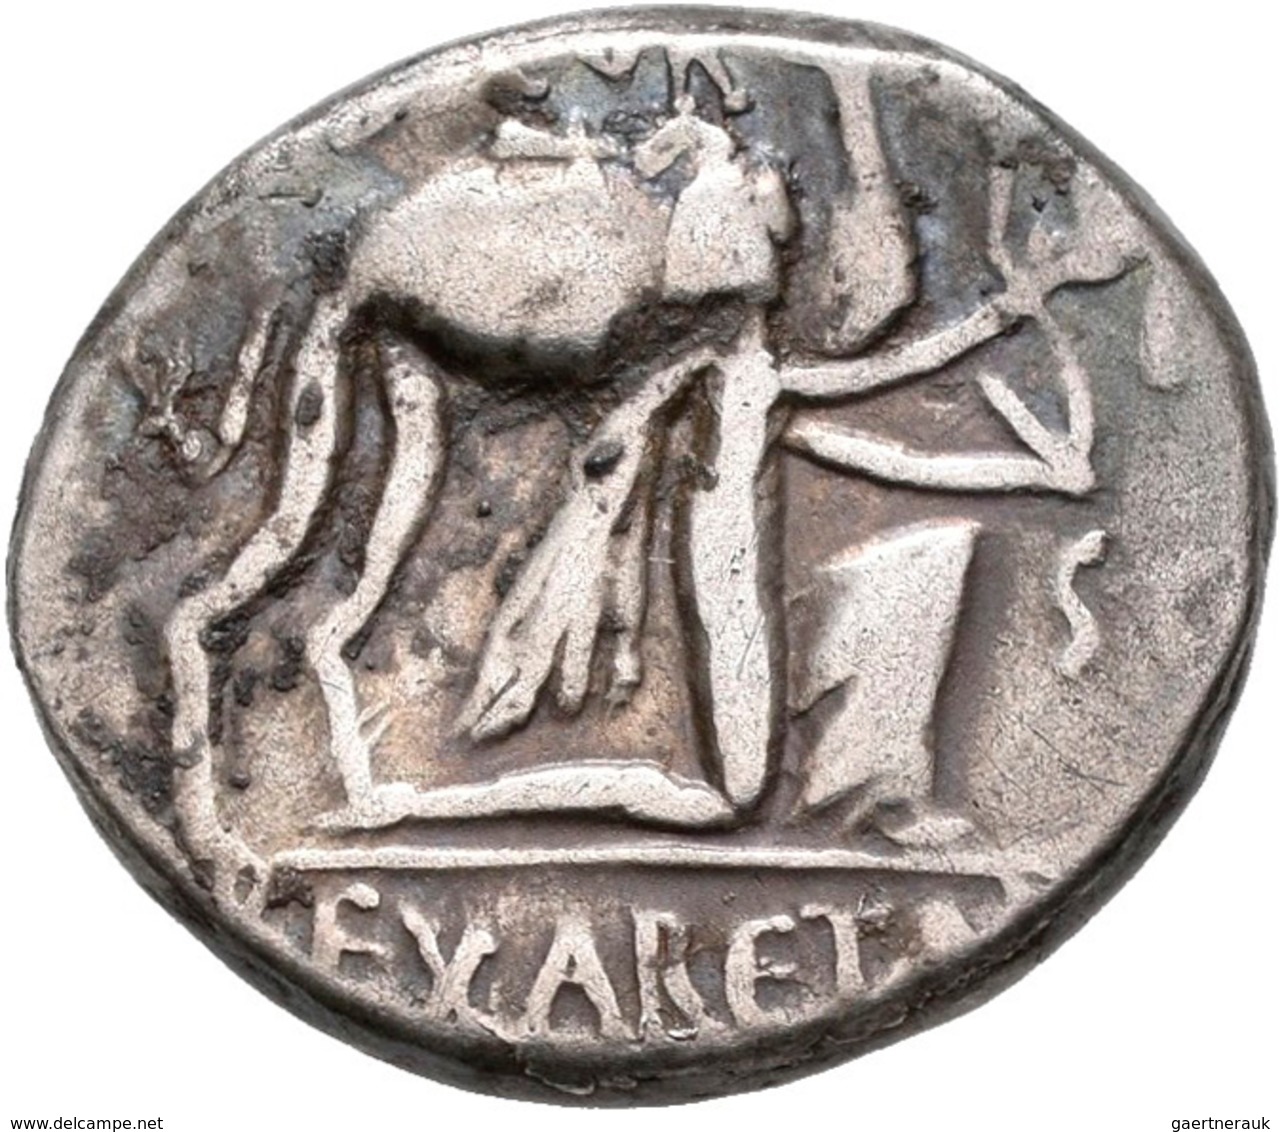 Antike: Lot 10 Silbermünzen aus der Römischen Republik und aus der Römischen Kaiserzeit; u.a. Sextus